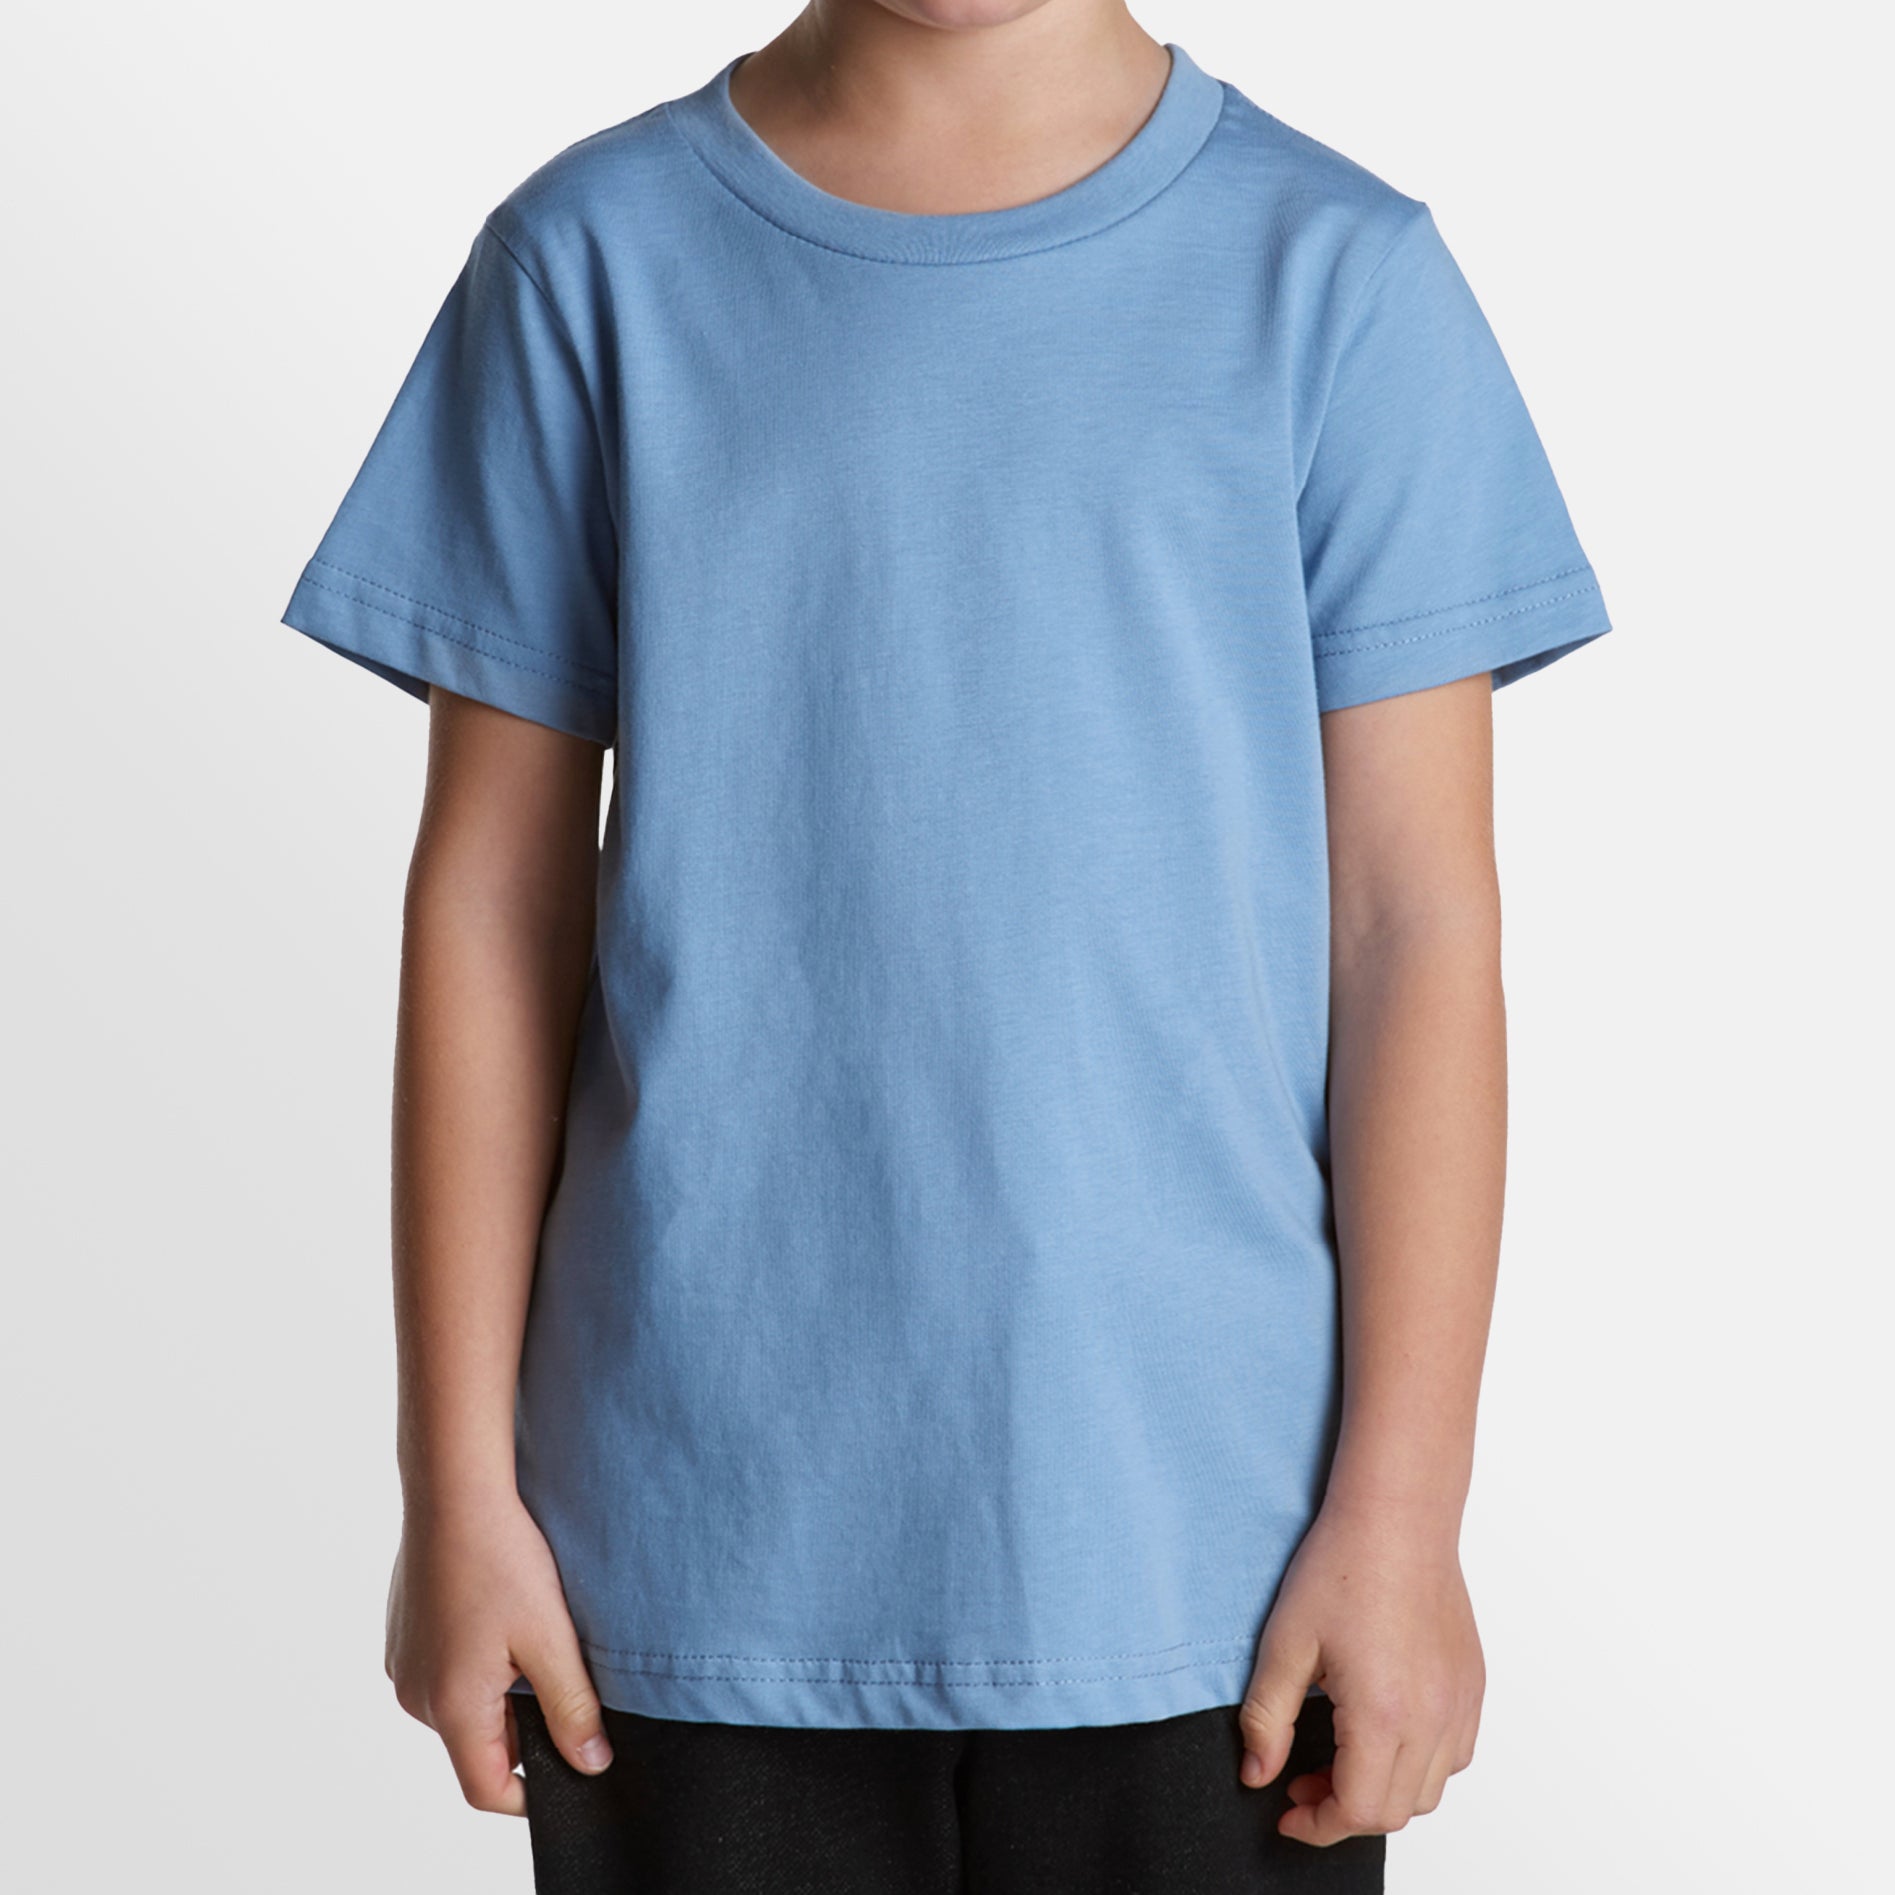 Premium Kids Tee - Custom Printed | AS Colour – The T-Shirt Co